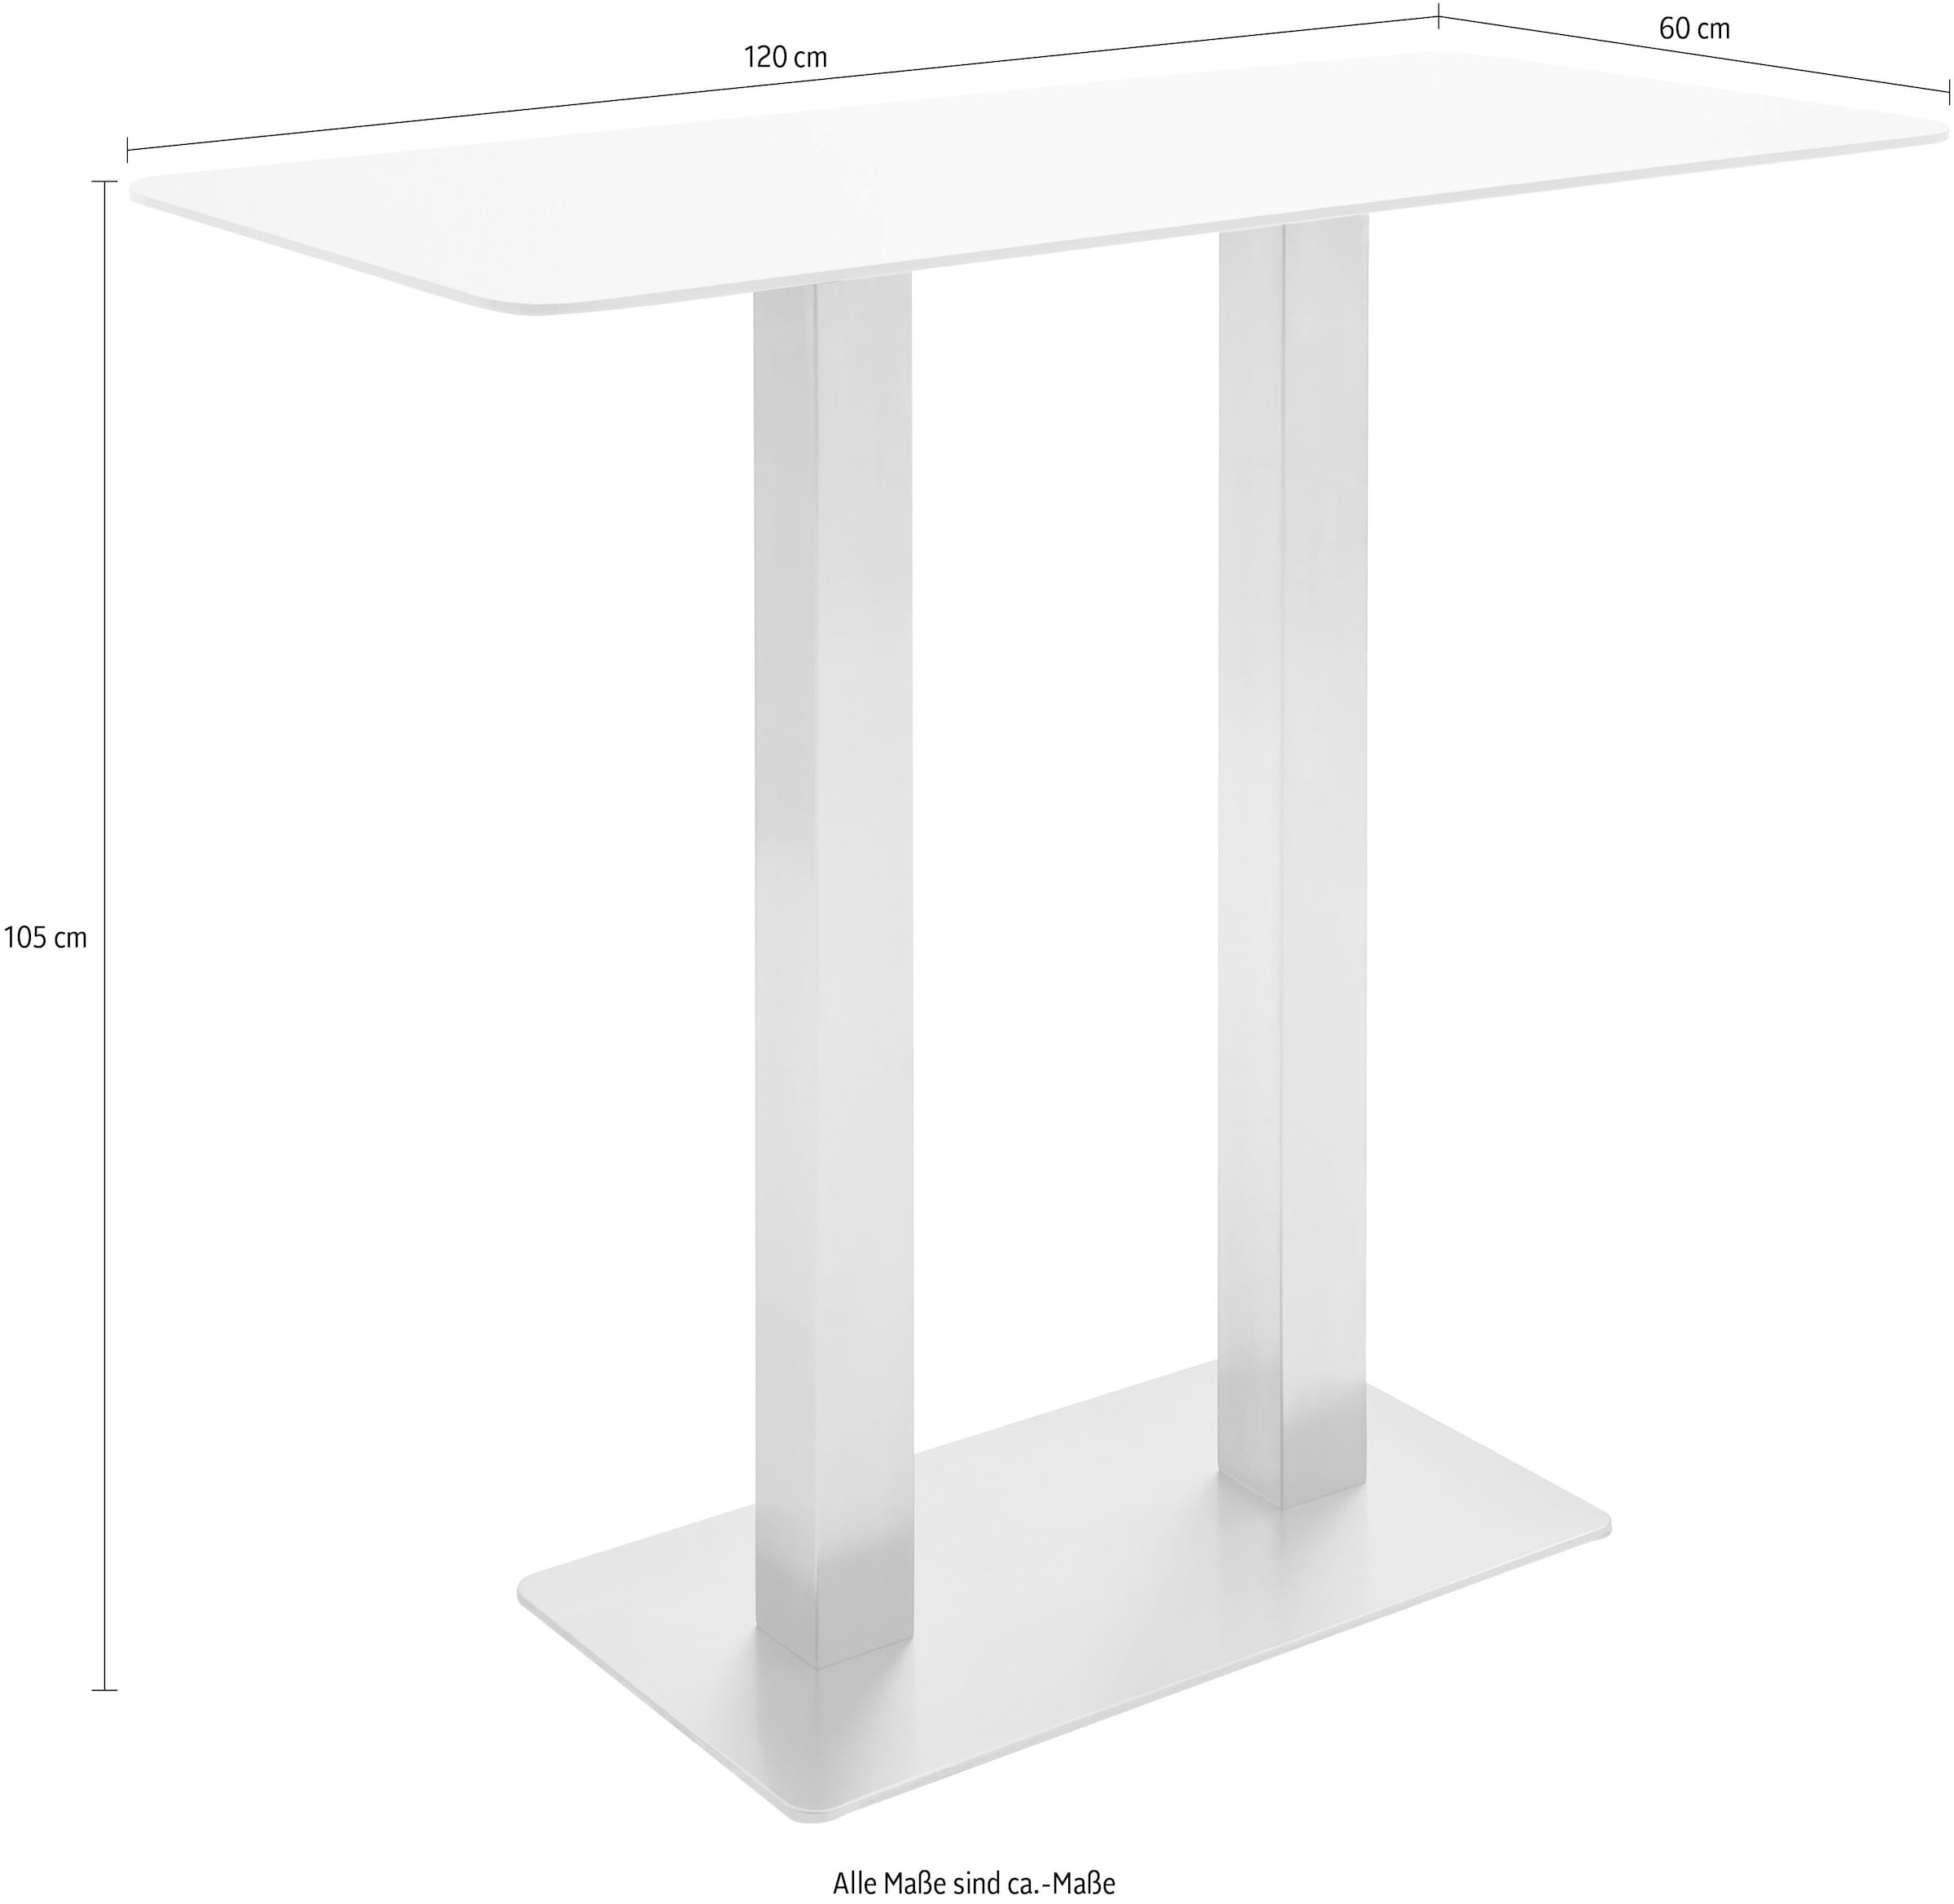 MCA furniture Bartisch »Zarina«, Bartisch mit Glaskeramik Tischplatte mit Edelstahl Gestell